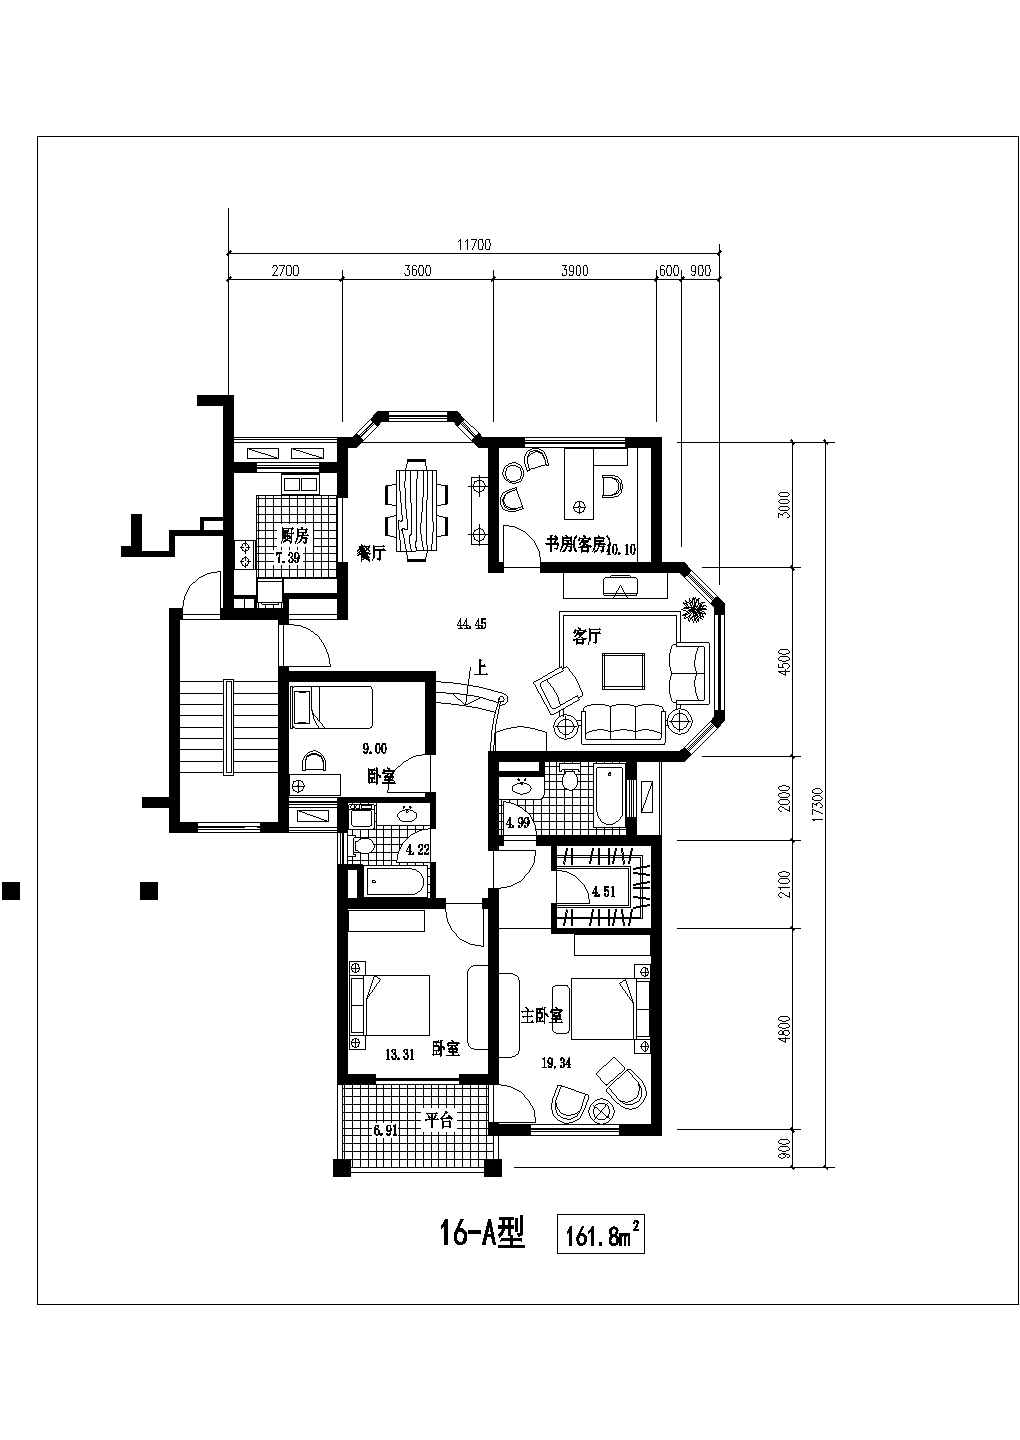 典型建筑面积125-165平方含跃层住宅户型设计cad建筑平面方案图集合